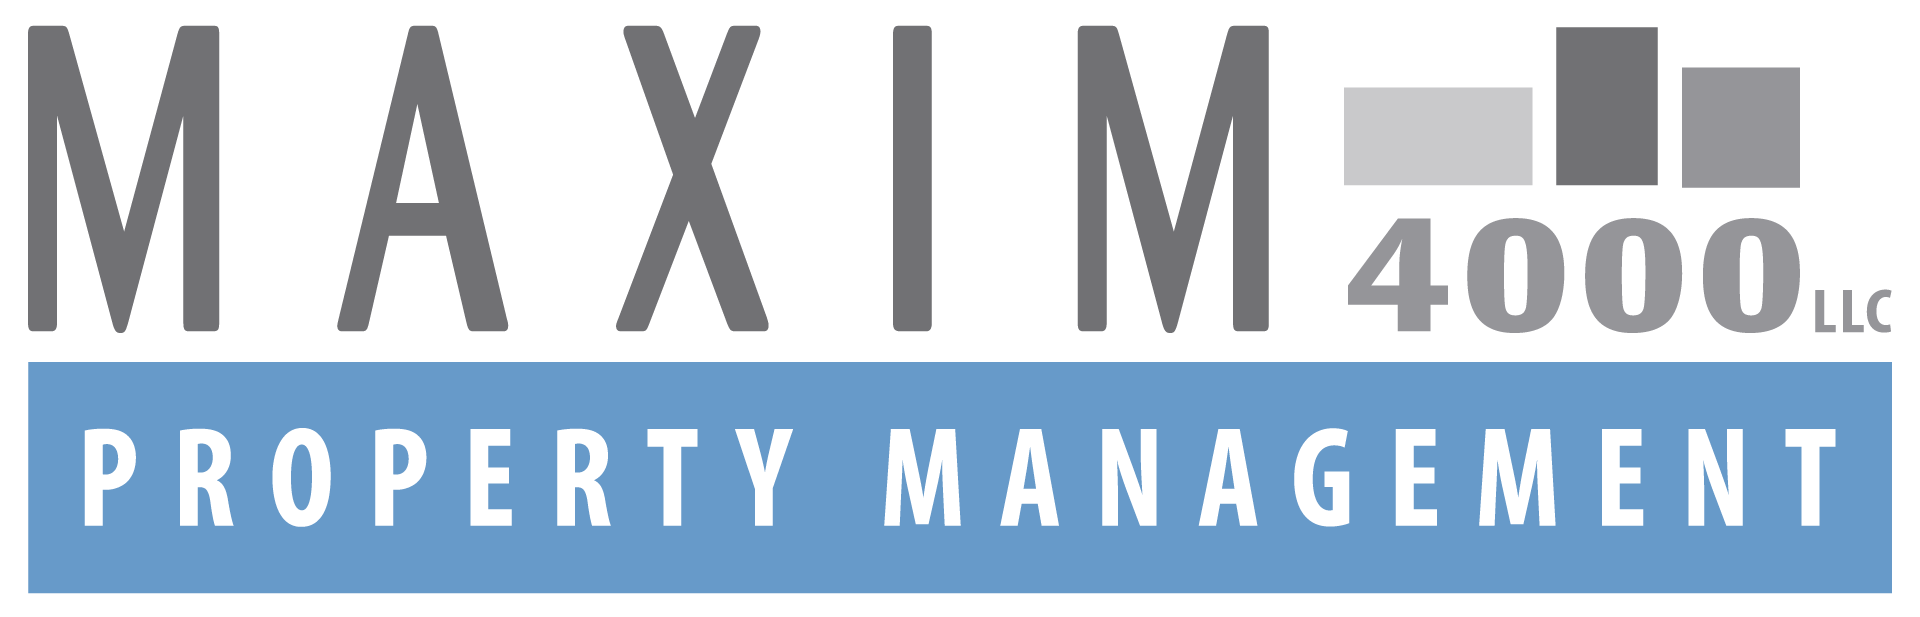 Maxim Property Management Header Logo - Select To Go Home